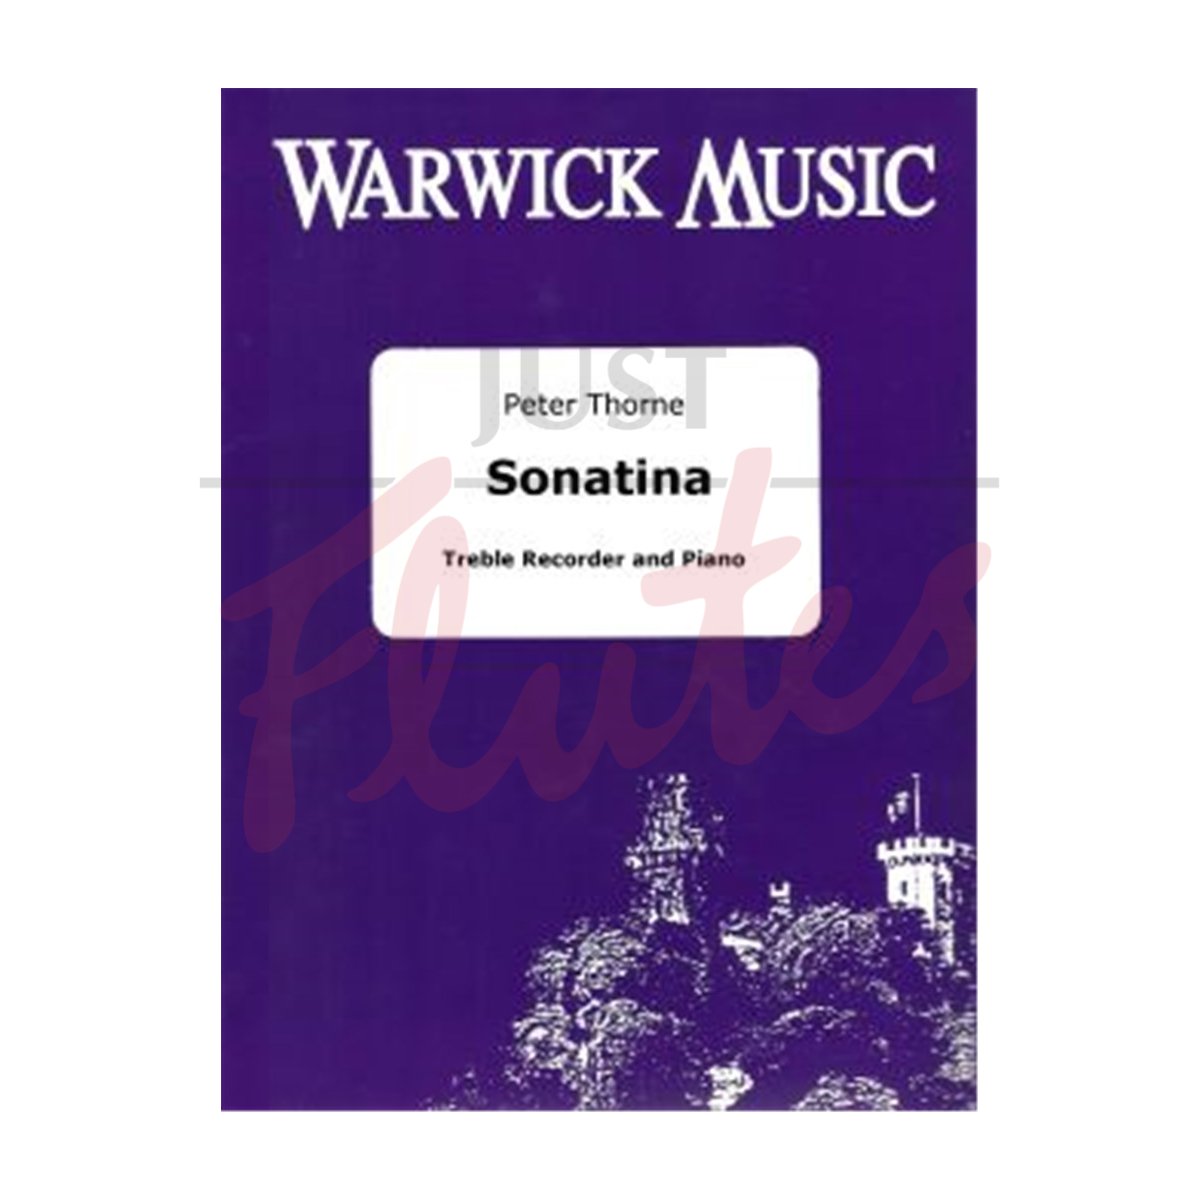 Sonatina for Treble Recorder and Piano